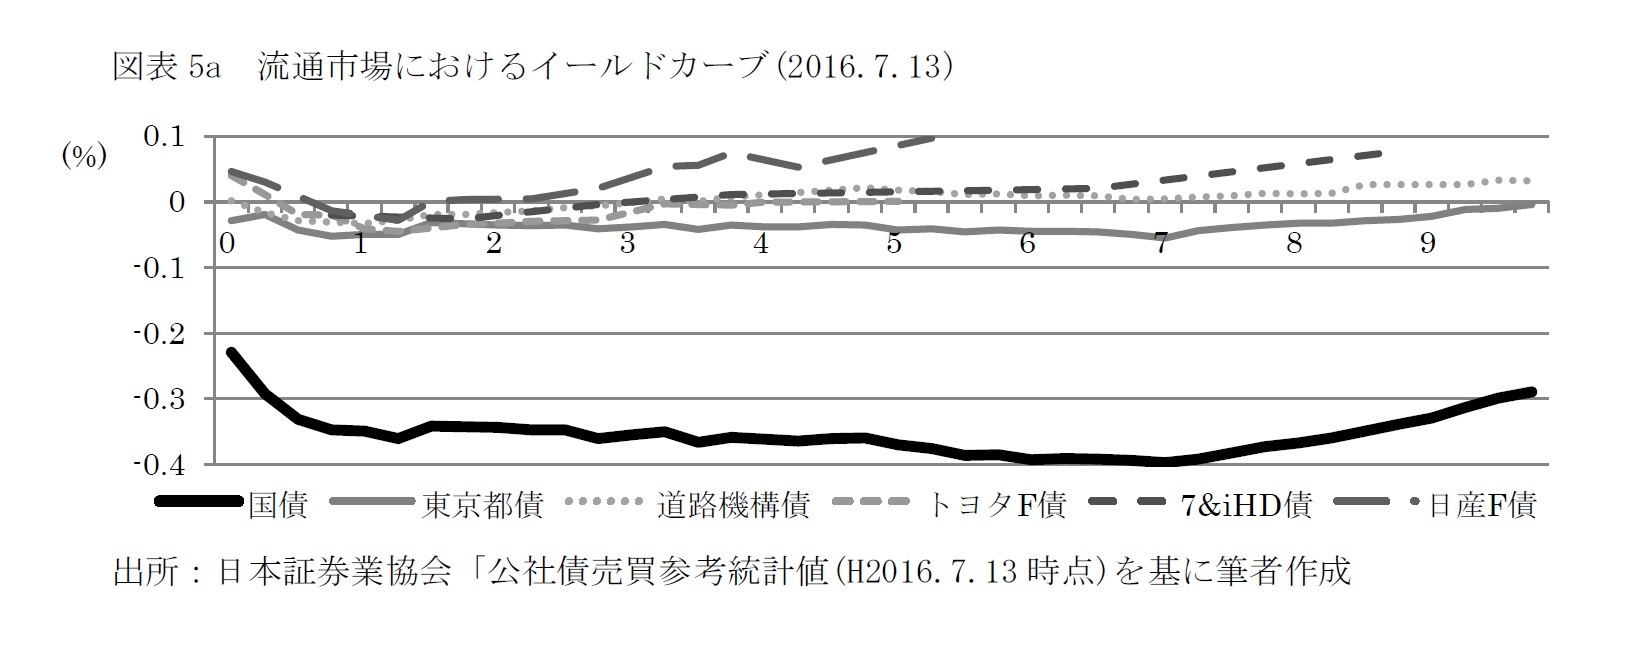 図表5a　流通市場におけるイールドカーブ(2016.7.13)